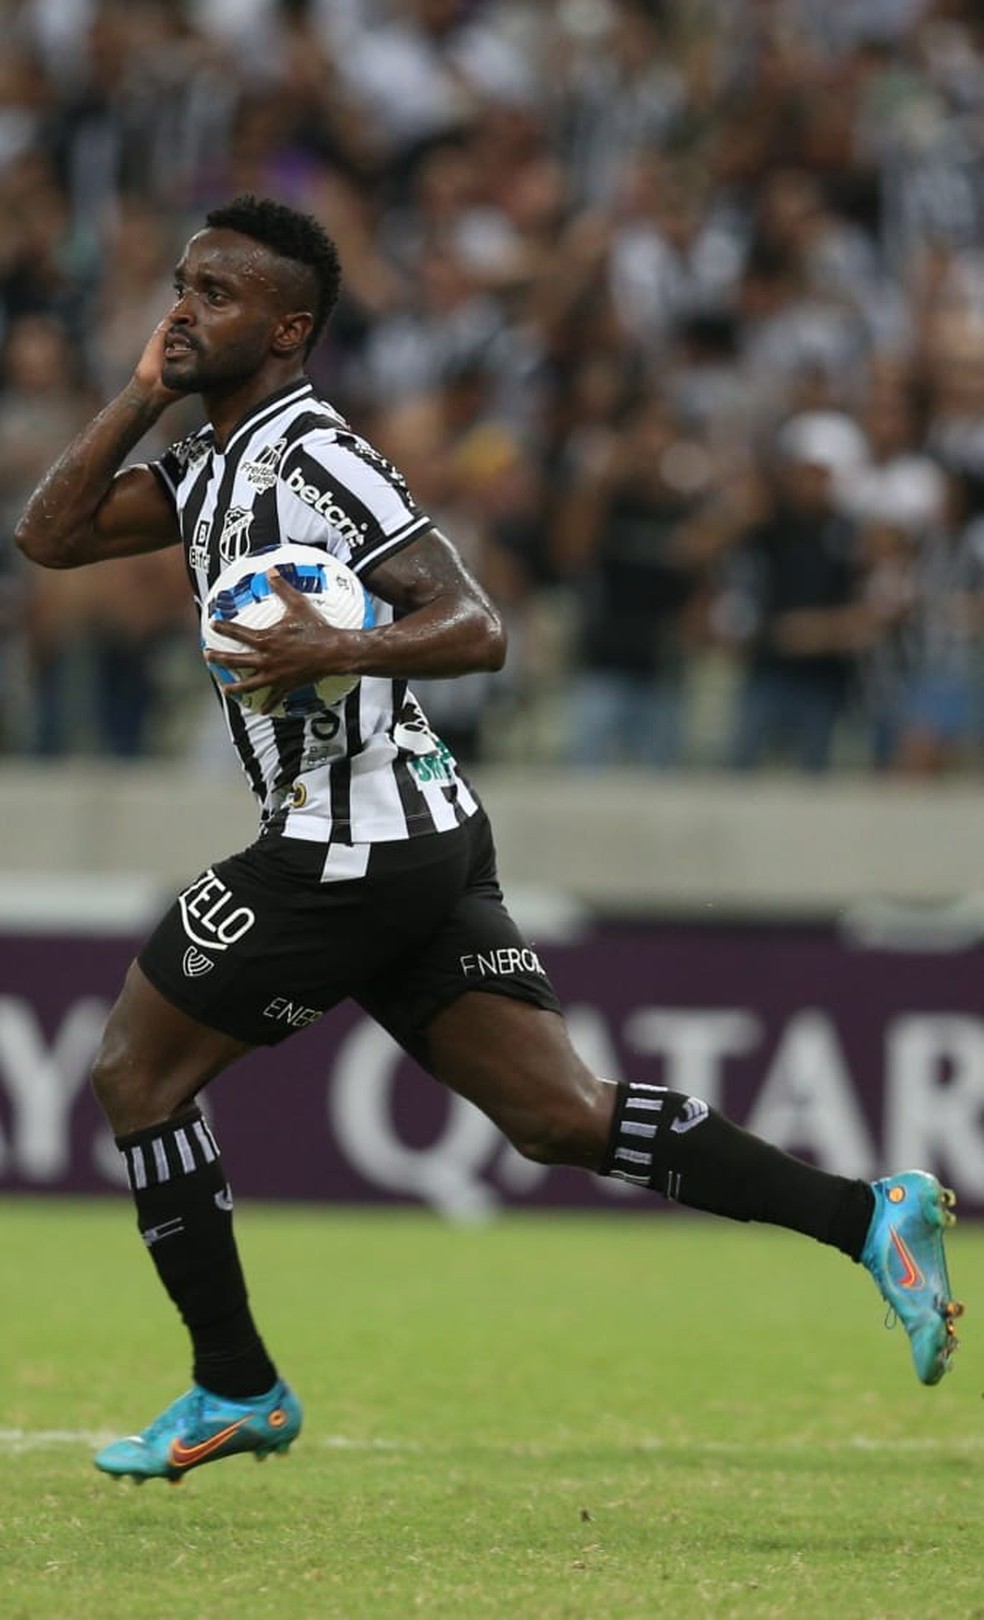 Quantos gols Mendonça tem no Ceará?